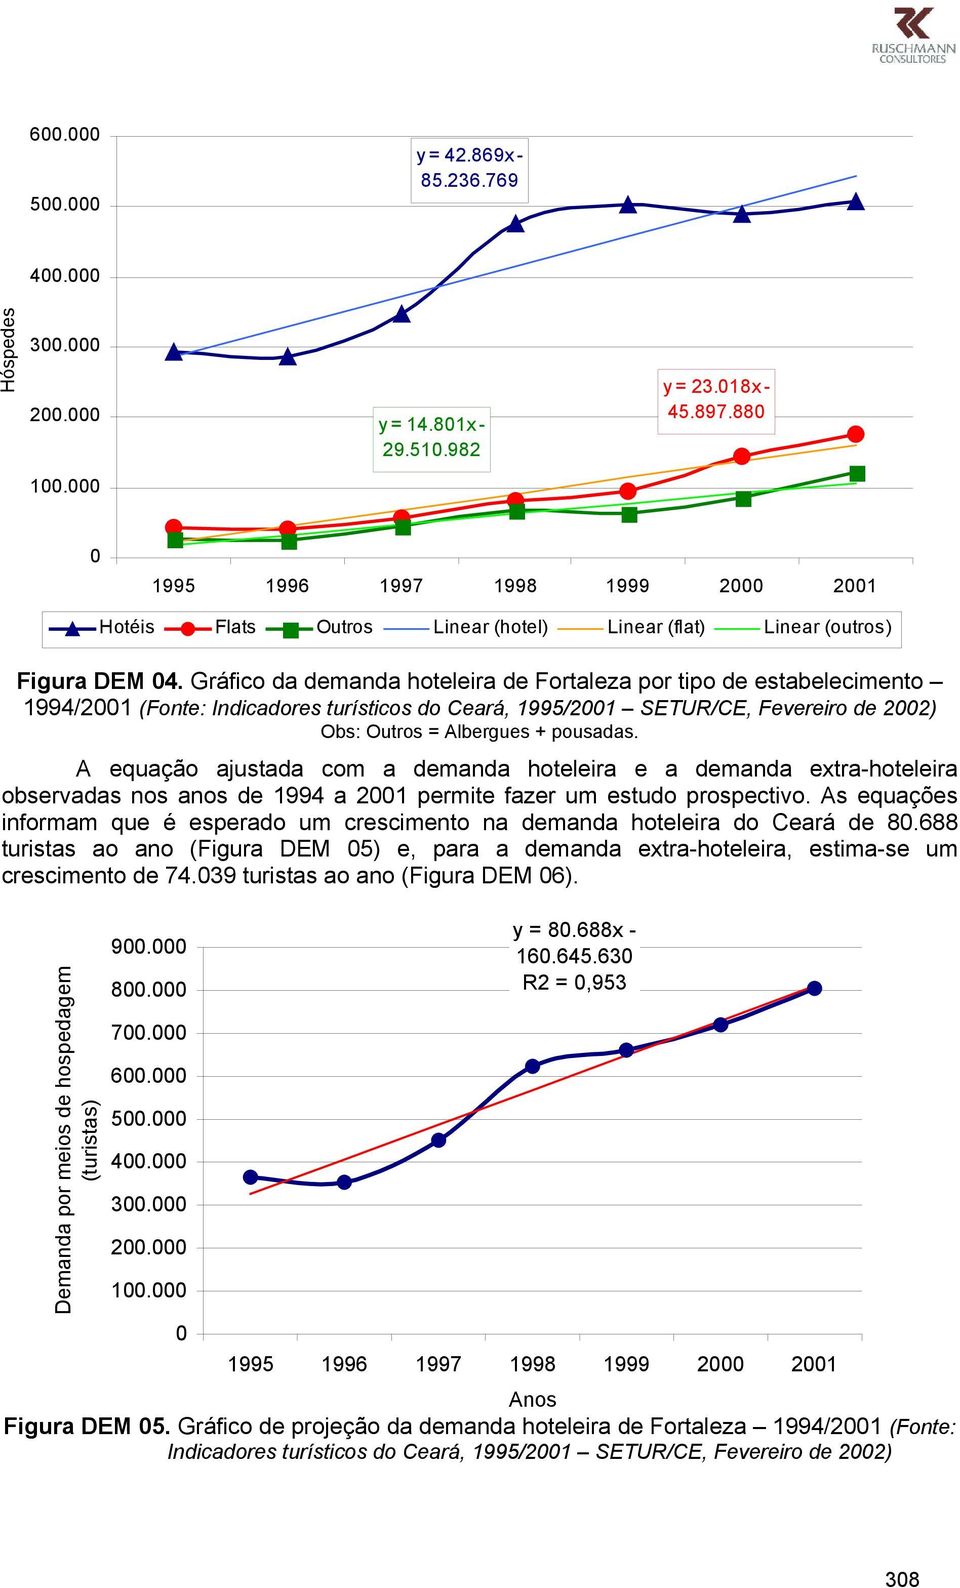 Gráfico da demanda hoteleira de Fortaleza por tipo de estabelecimento 1994/2001 (Fonte: Indicadores turísticos do Ceará, 1995/2001 SETUR/CE, Fevereiro de 2002) Obs: Outros = Albergues + pousadas.